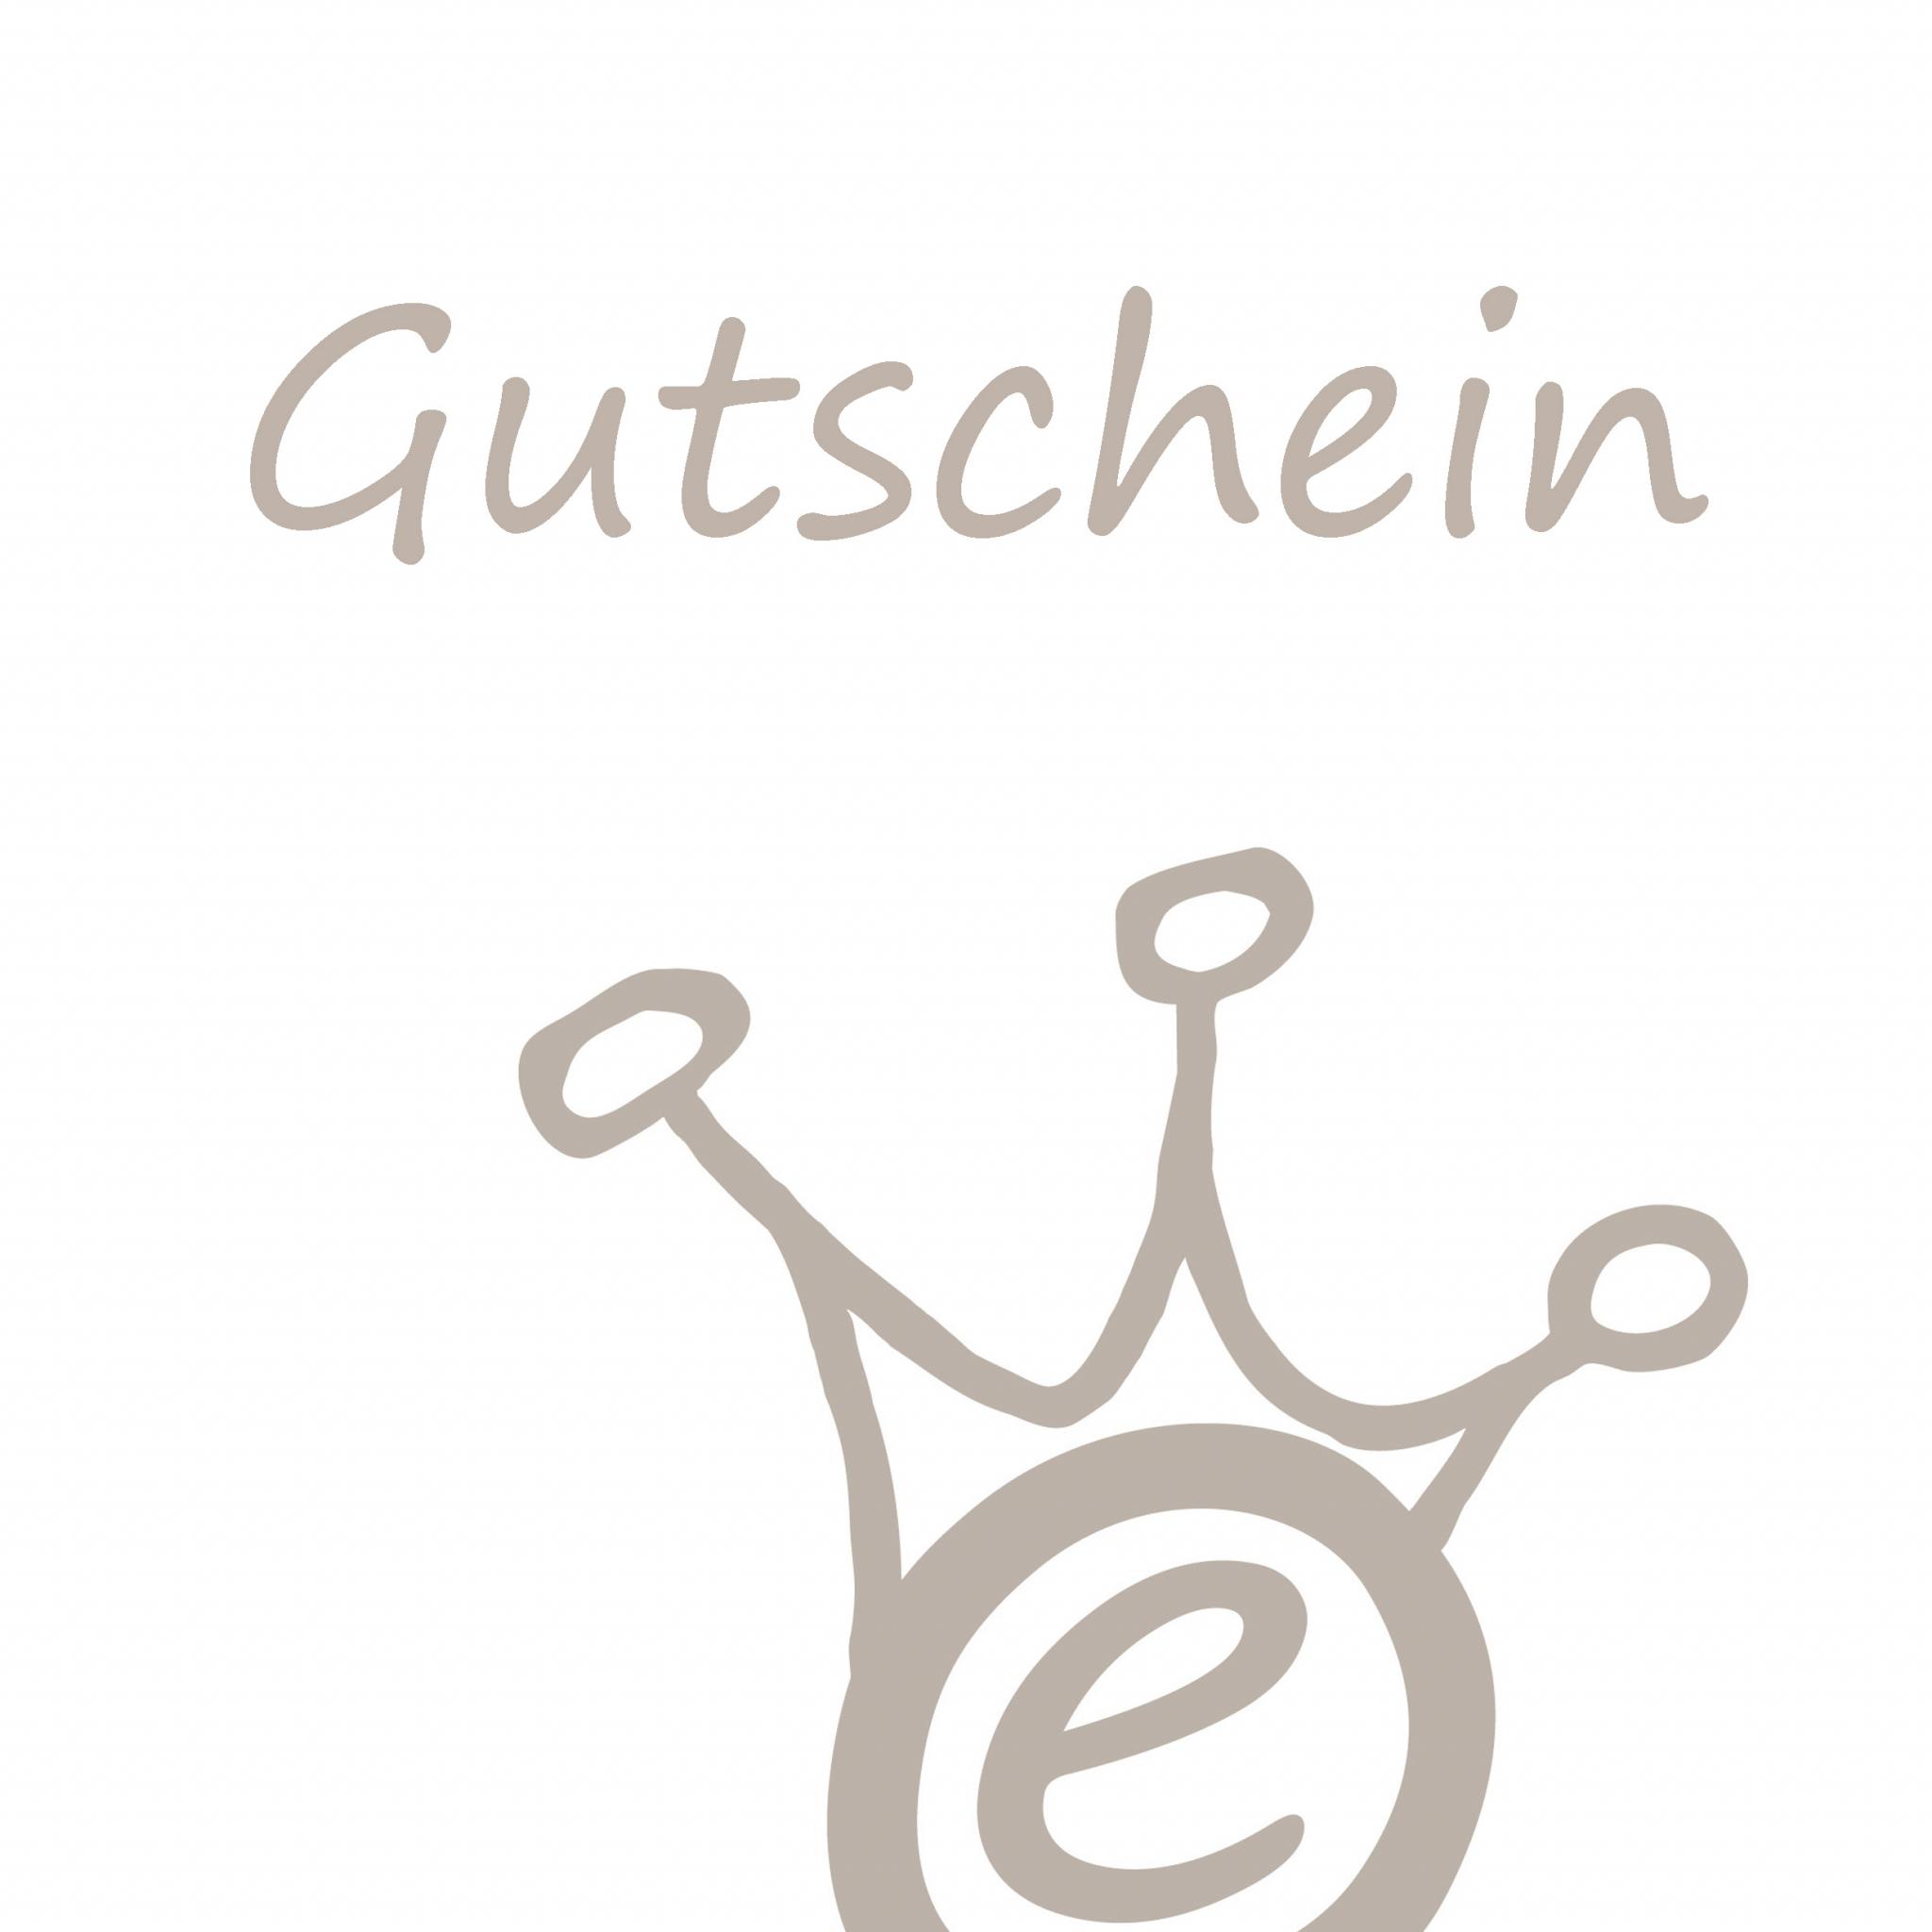 Gutschein Logo